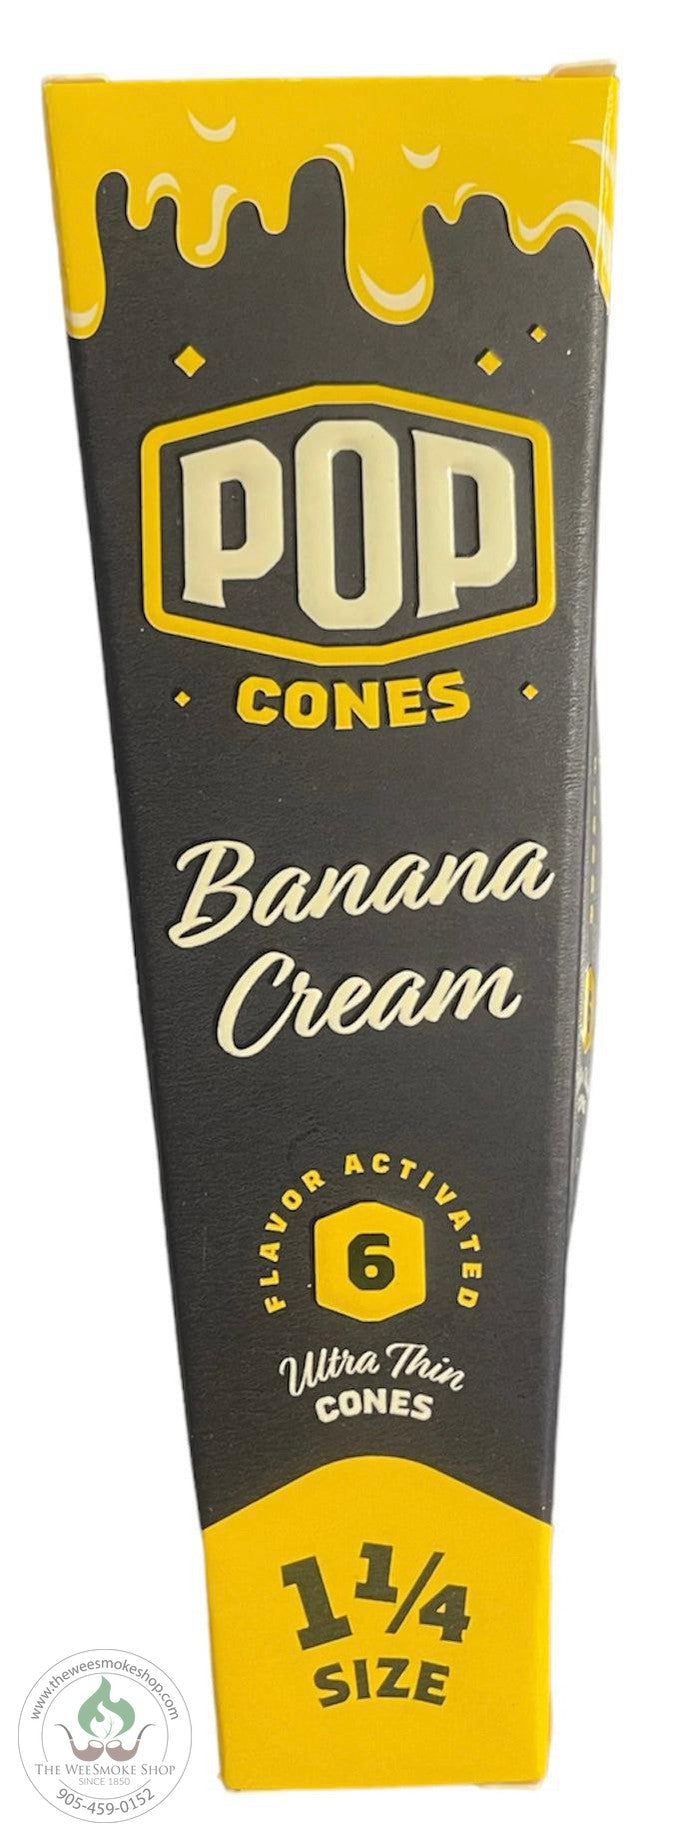 1 1/4 banana cream pop cones - The Wee Smoke Shop